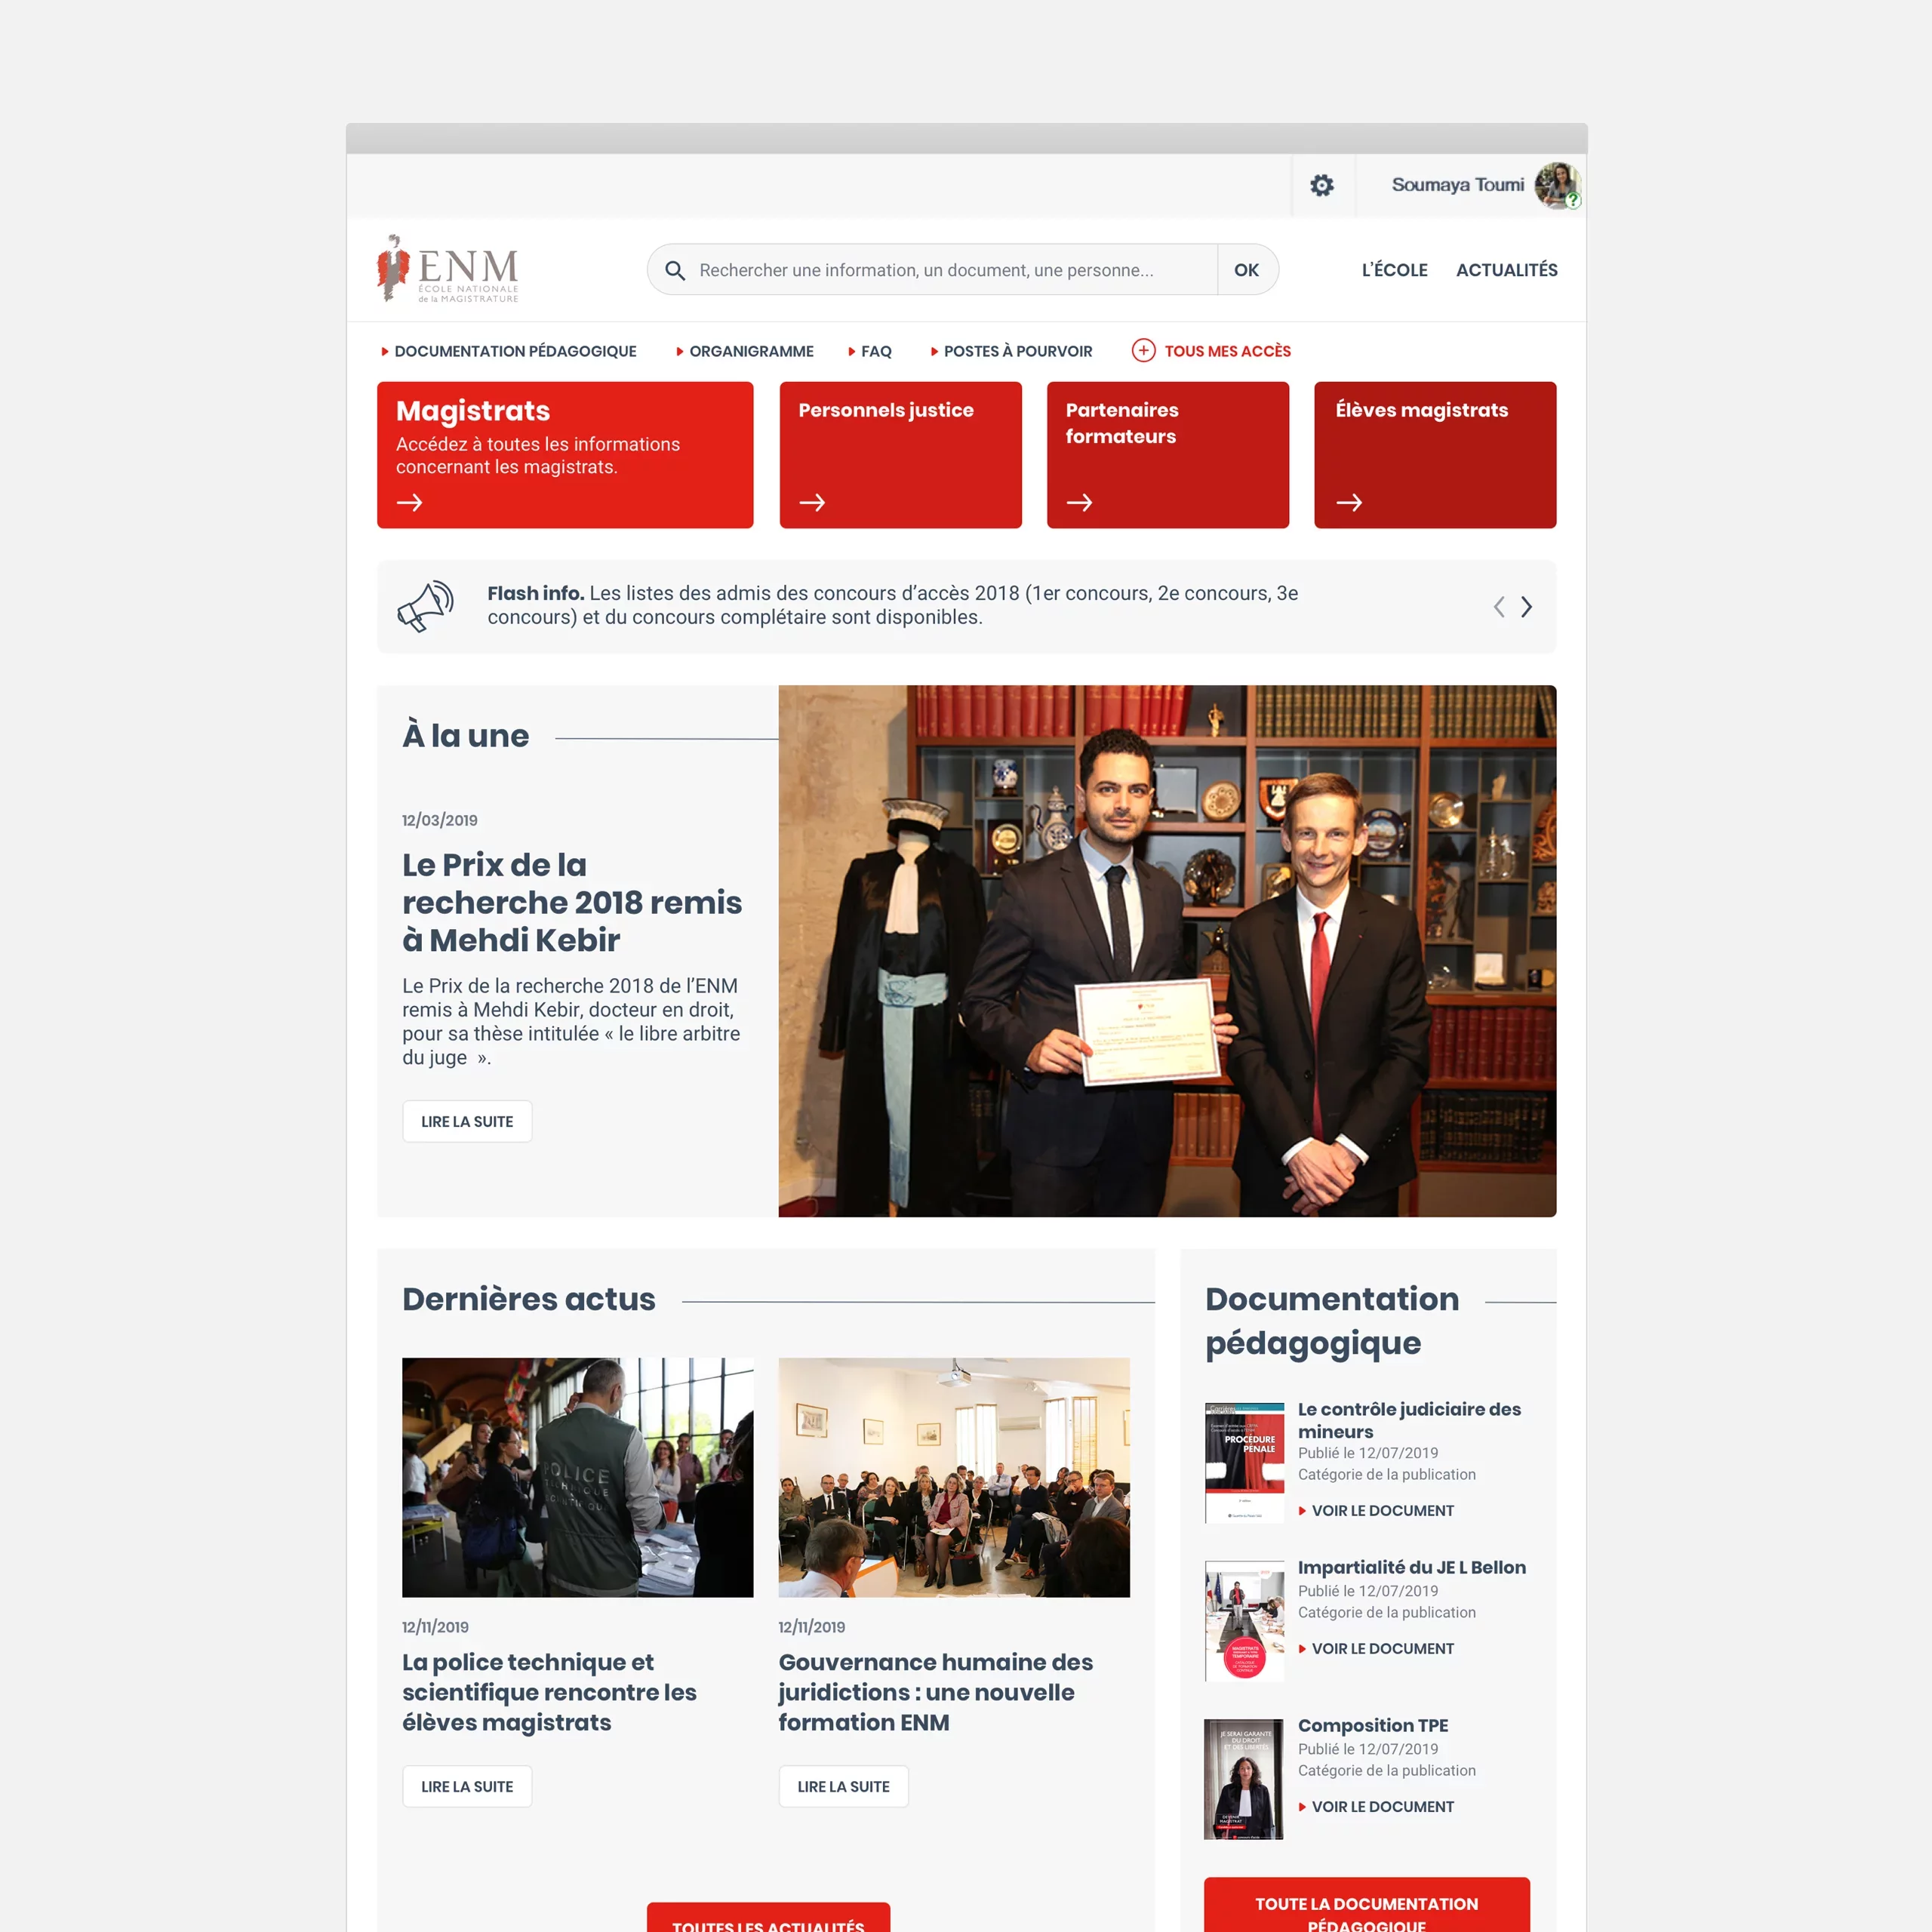 Design de la page d'accueil de l'intranet, composé d'accès directs, d'actualités et de documentations pédagogiques